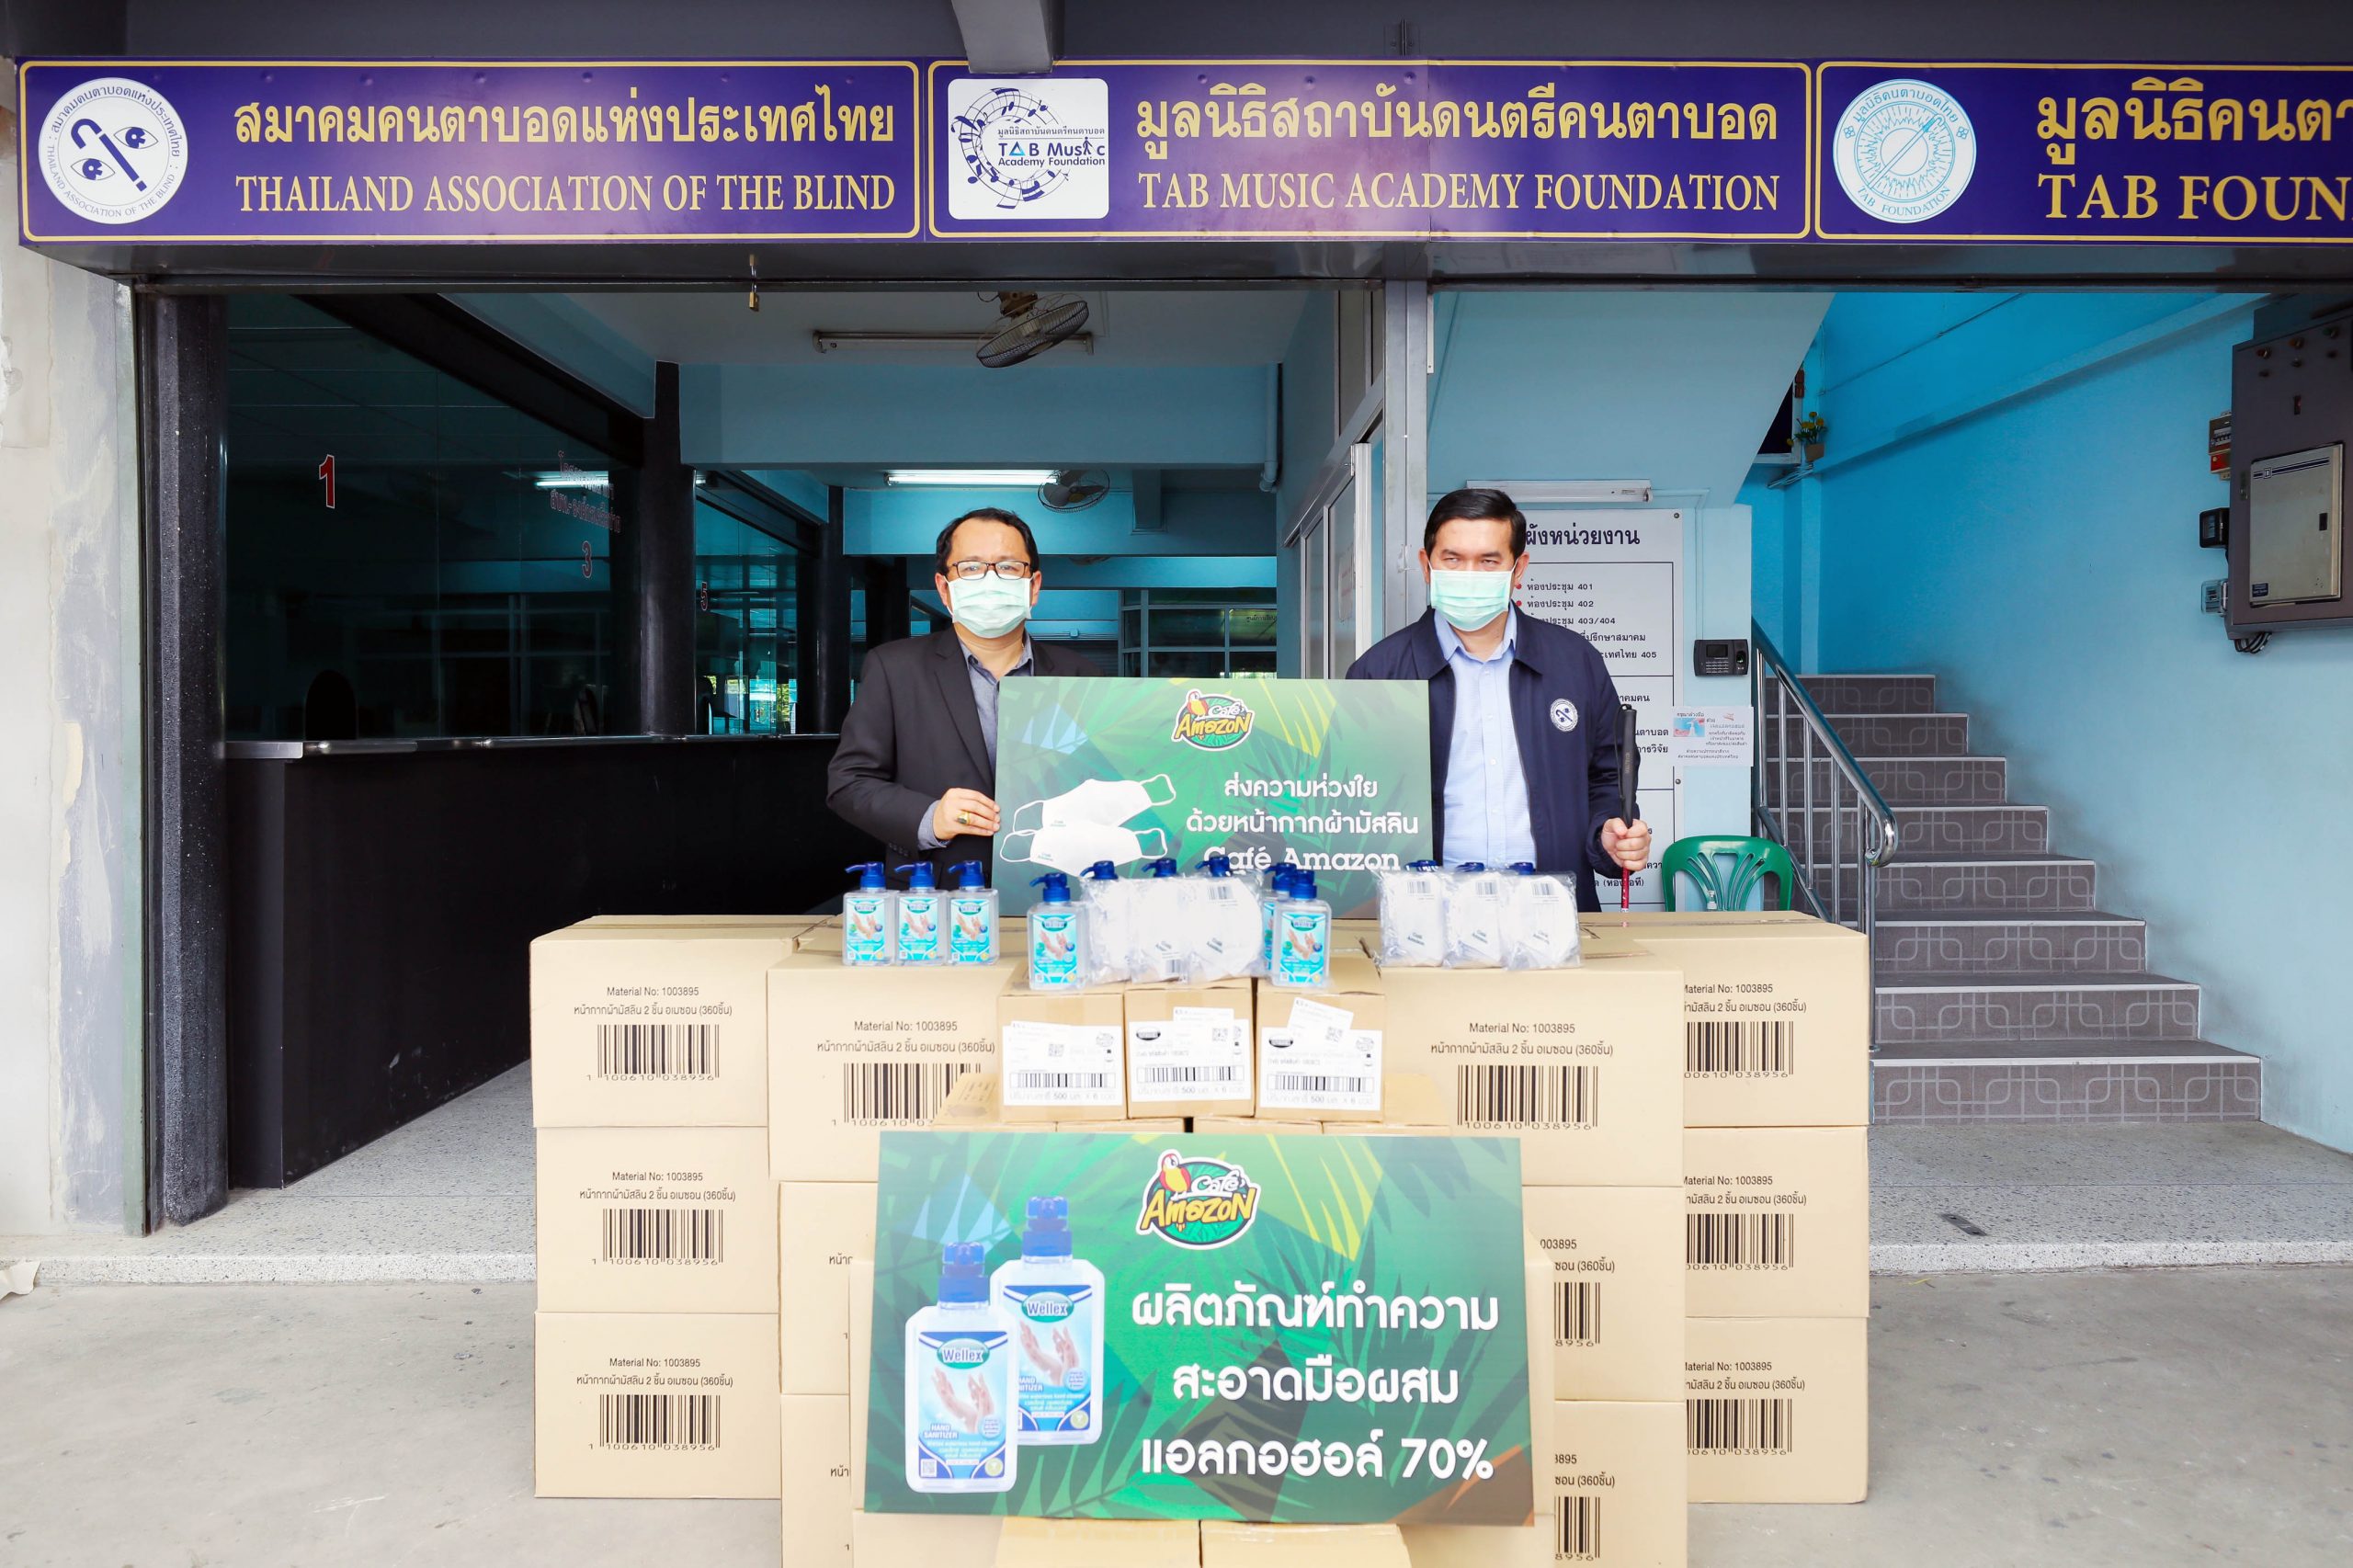 ภาพข่าว: คาเฟ่ อเมซอน มอบหน้ากากผ้าและแอลกอฮอล์ทำความสะอาดมือ แก่สมาคมคนตาบอดแห่งประเทศไทย